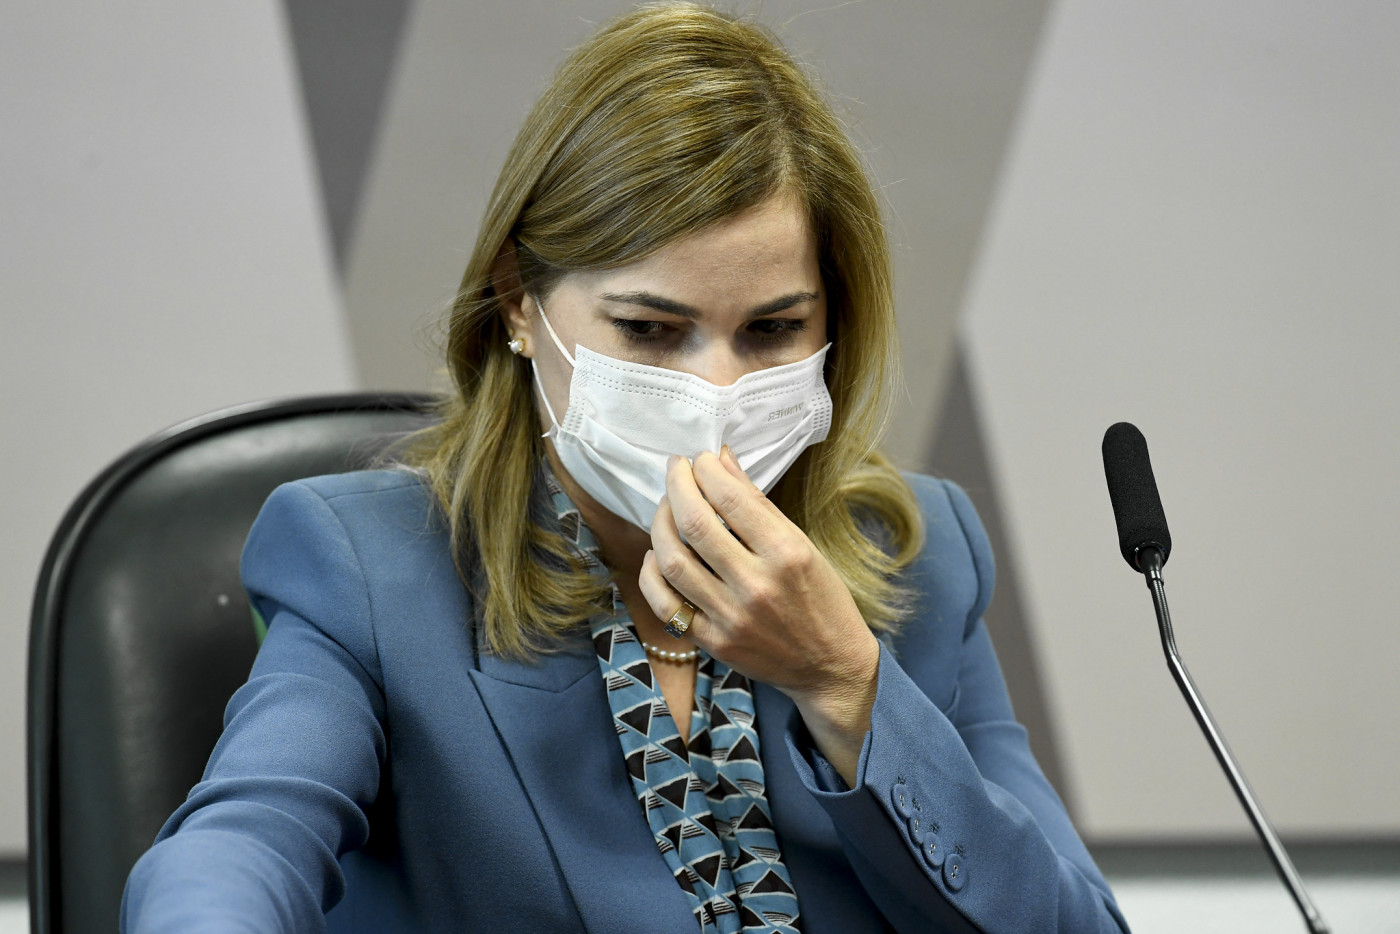 A secretária do Ministério da Saúde, Mayra Pinheiro, durante pronunciamento na CPI da Covid-19